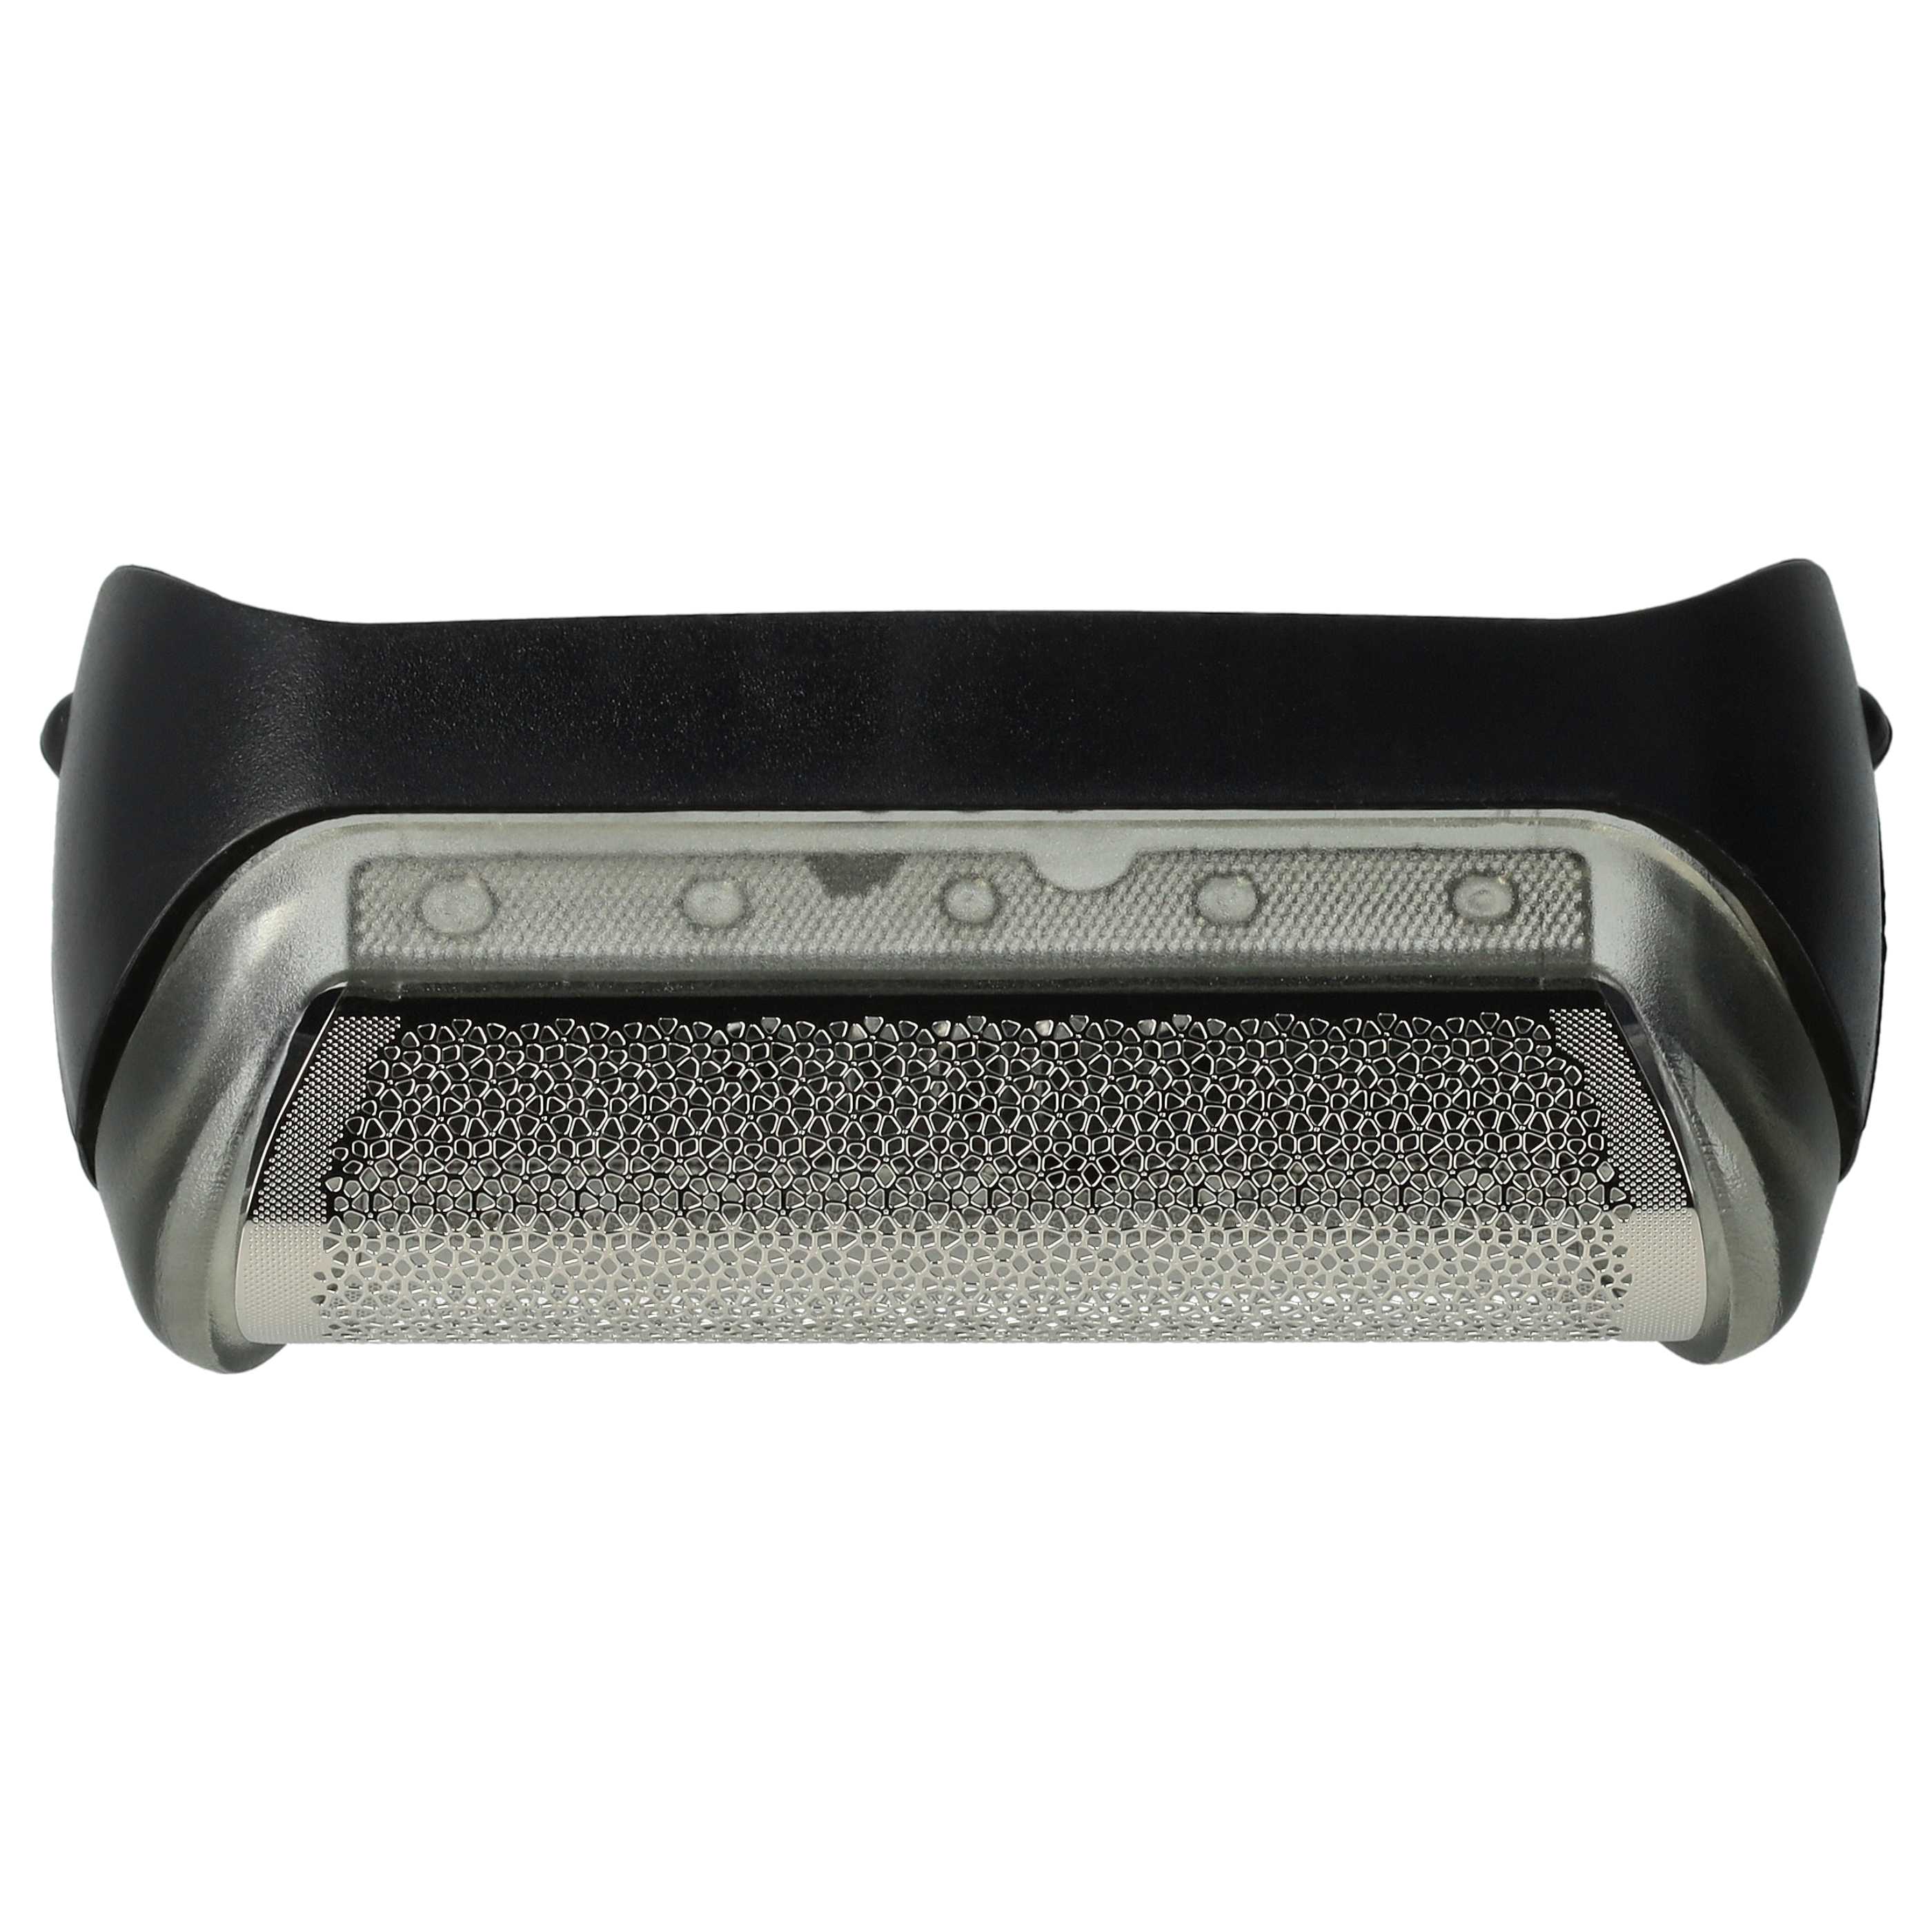 Grille remplace Braun 5733700, 5733701, 20s, 20B, 10B pour rasoir Braun - avec cadre de tête, noir/argenté